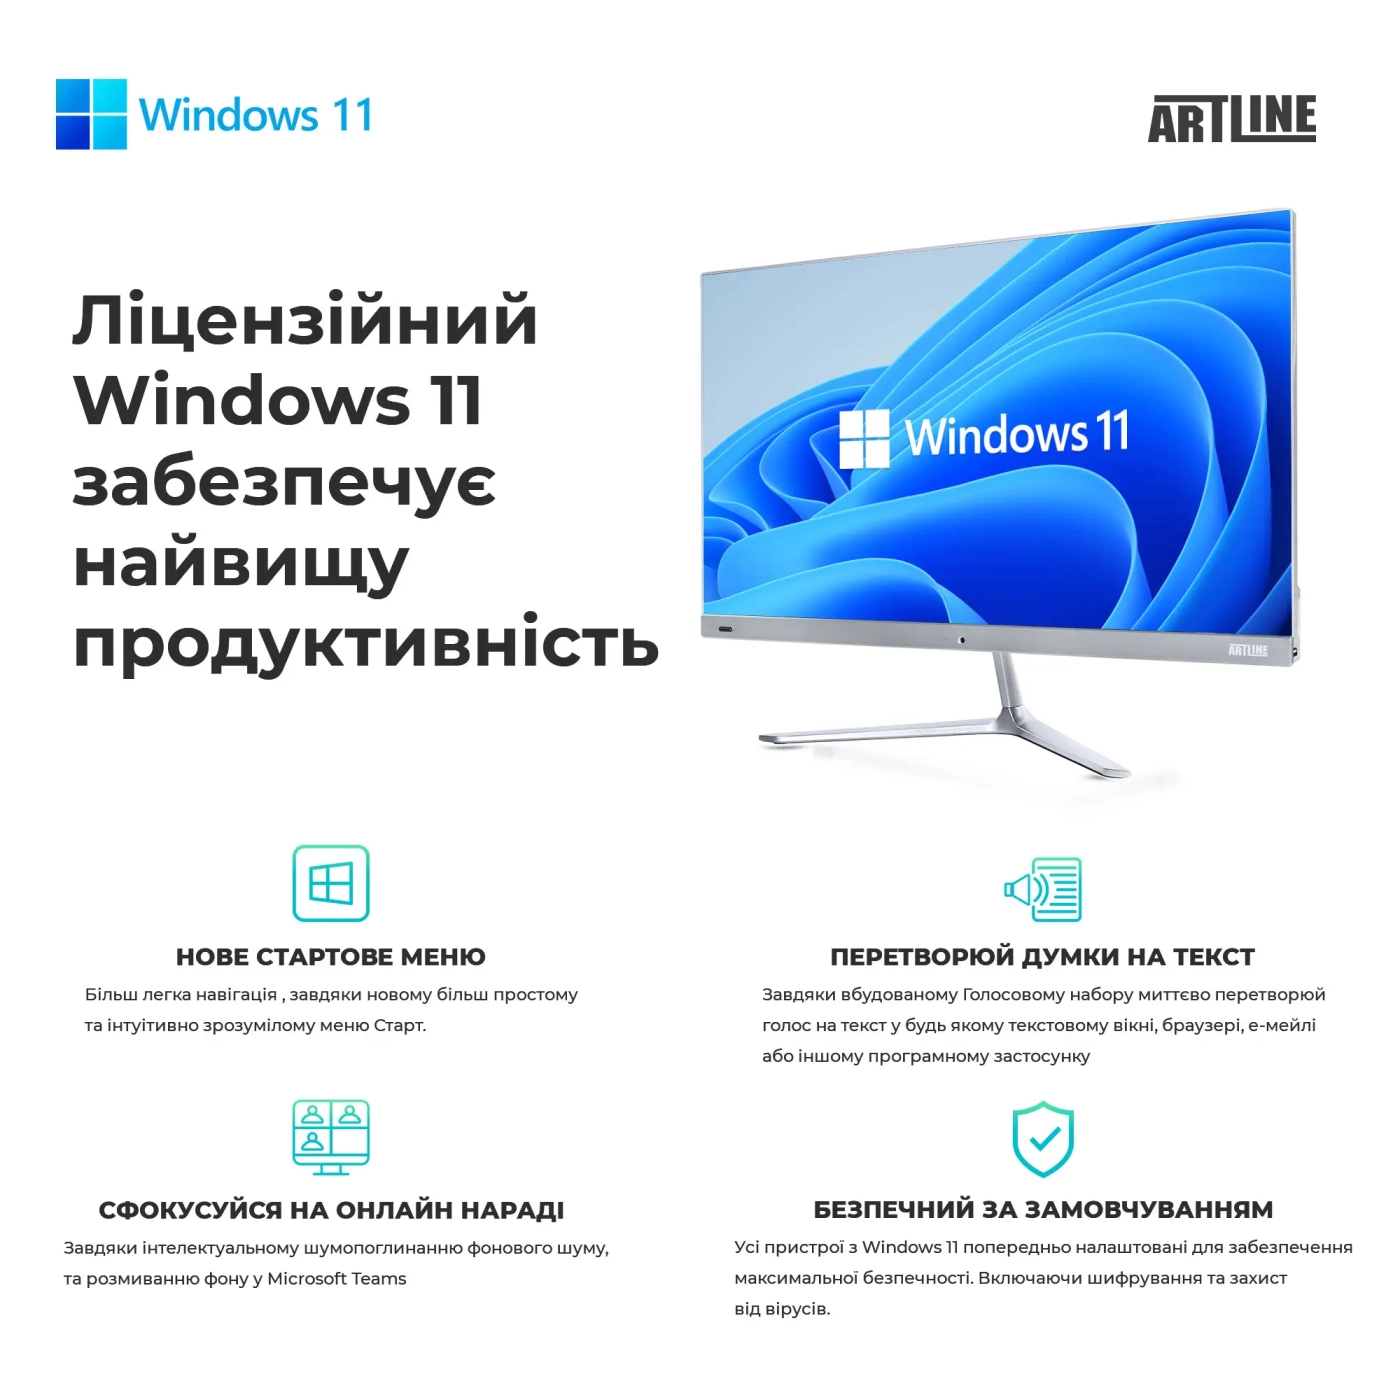 Купить Рабочая станция ARTLINE WorkStation W52 Windows 11 Pro (W52v22Win) - фото 6